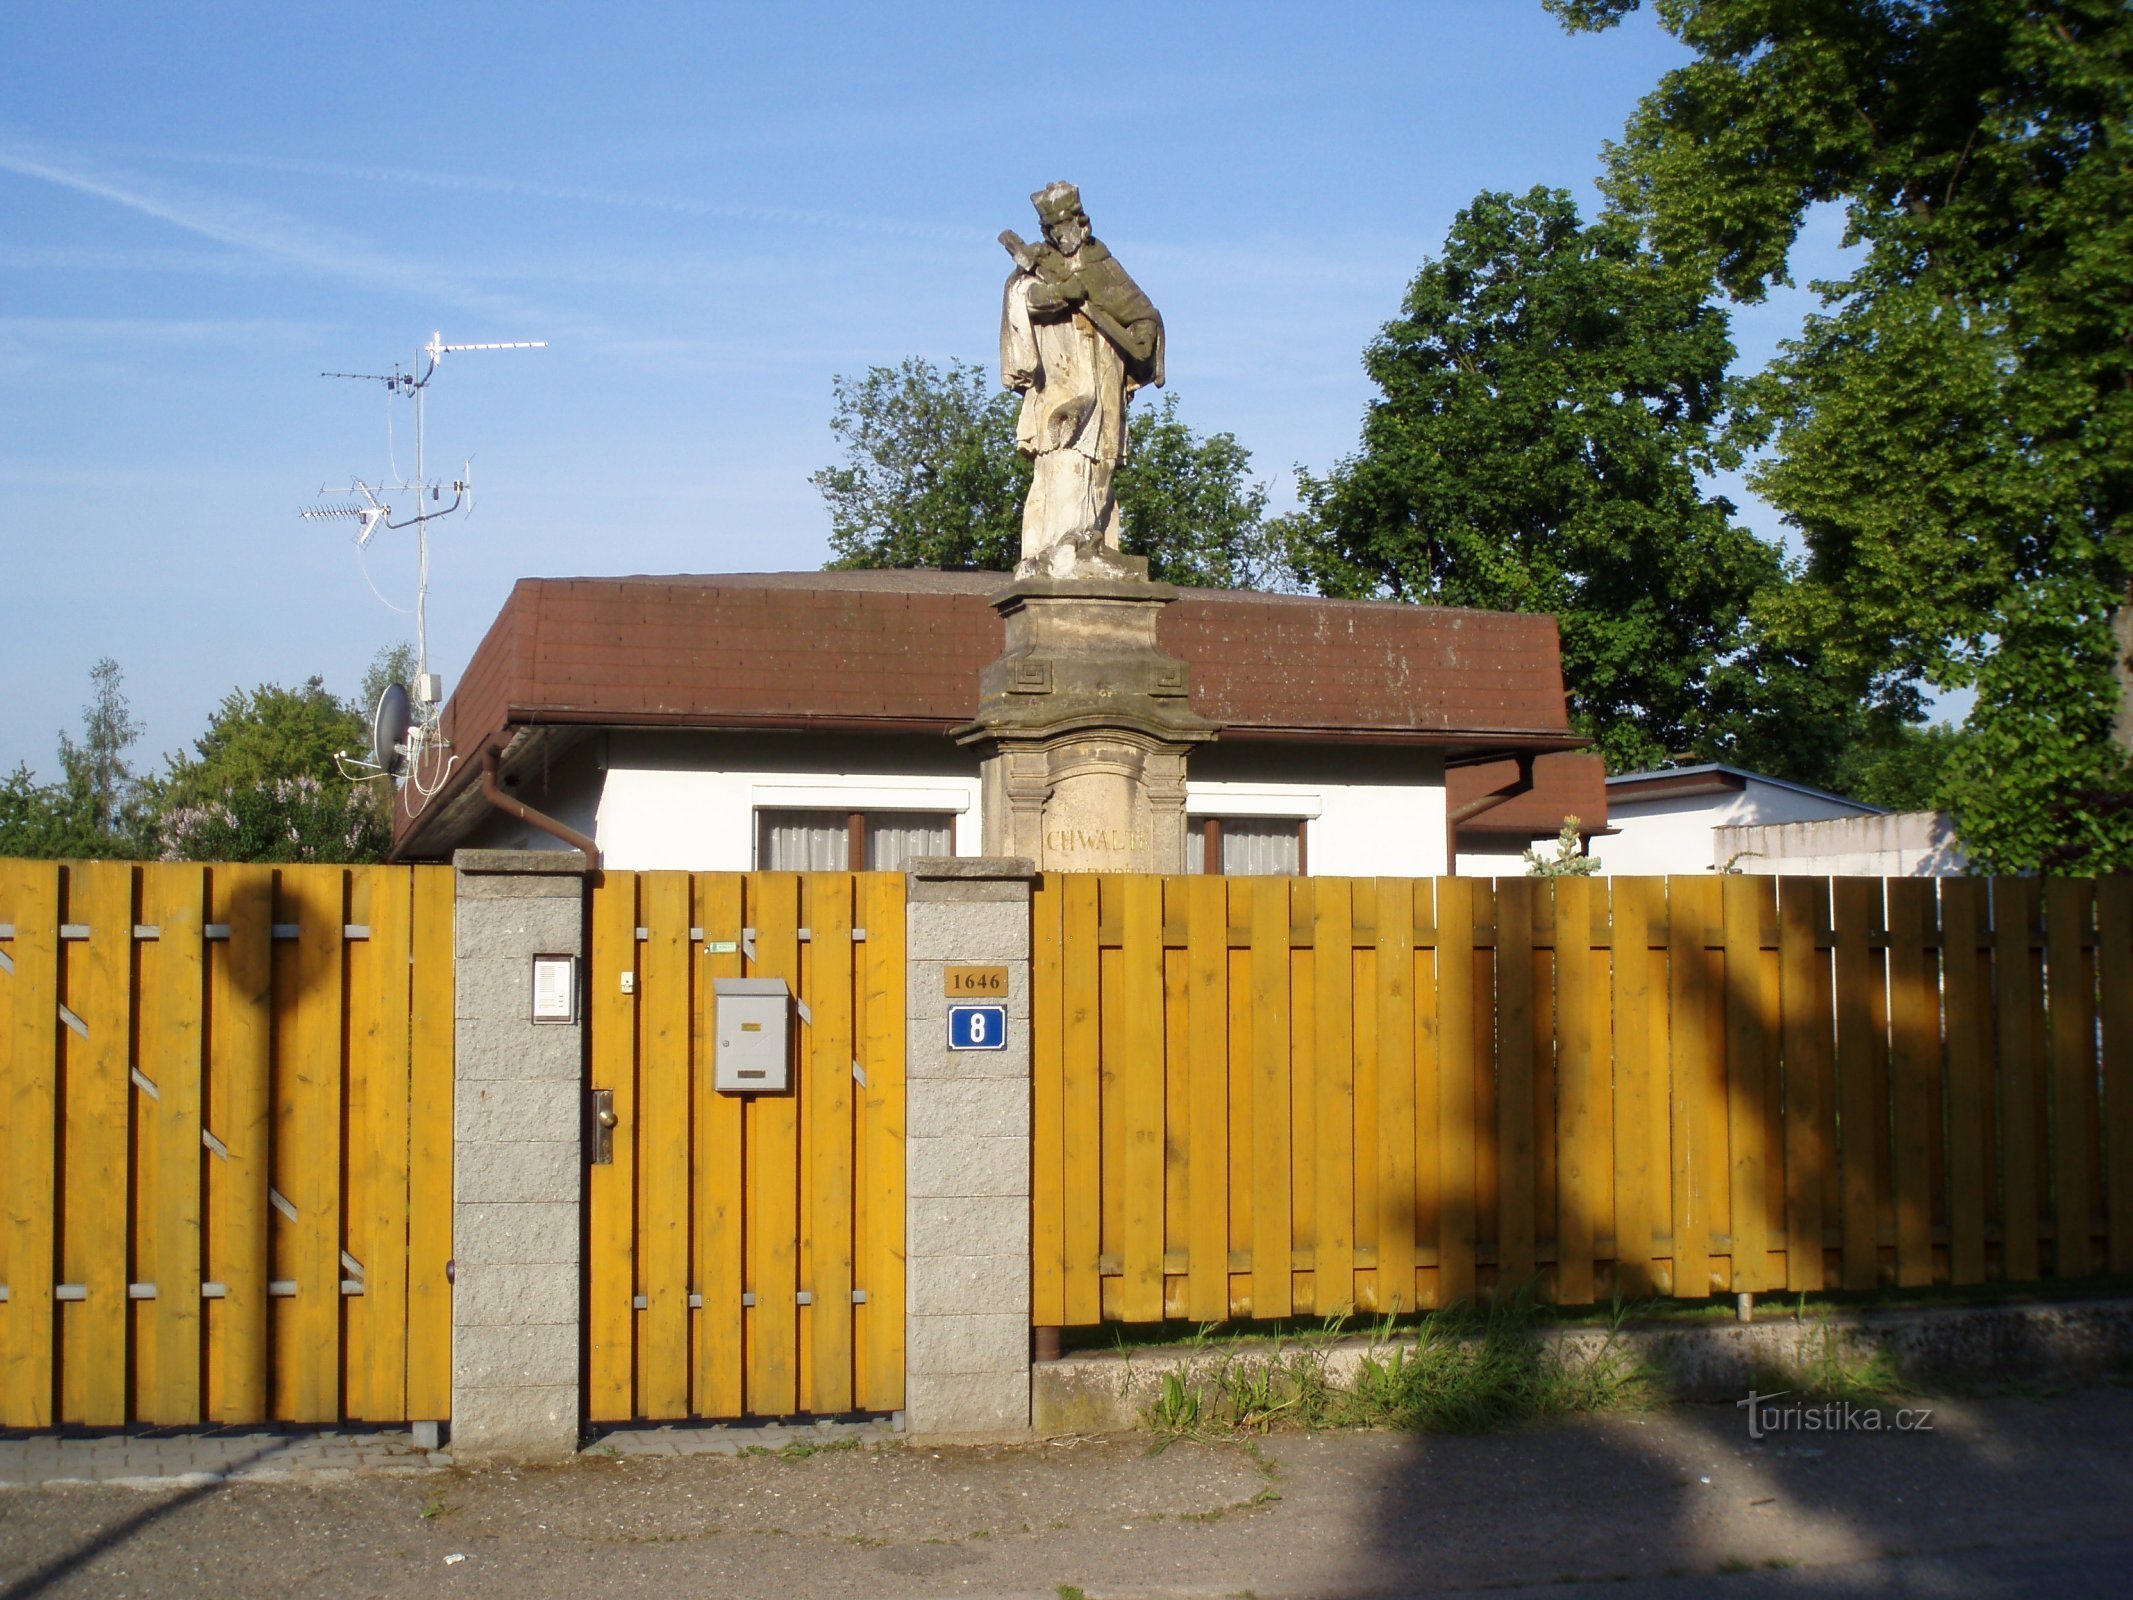 Statuia Sf. Jan Nepomucký în strada Medková (Hradec Králové, 11.5.2011)